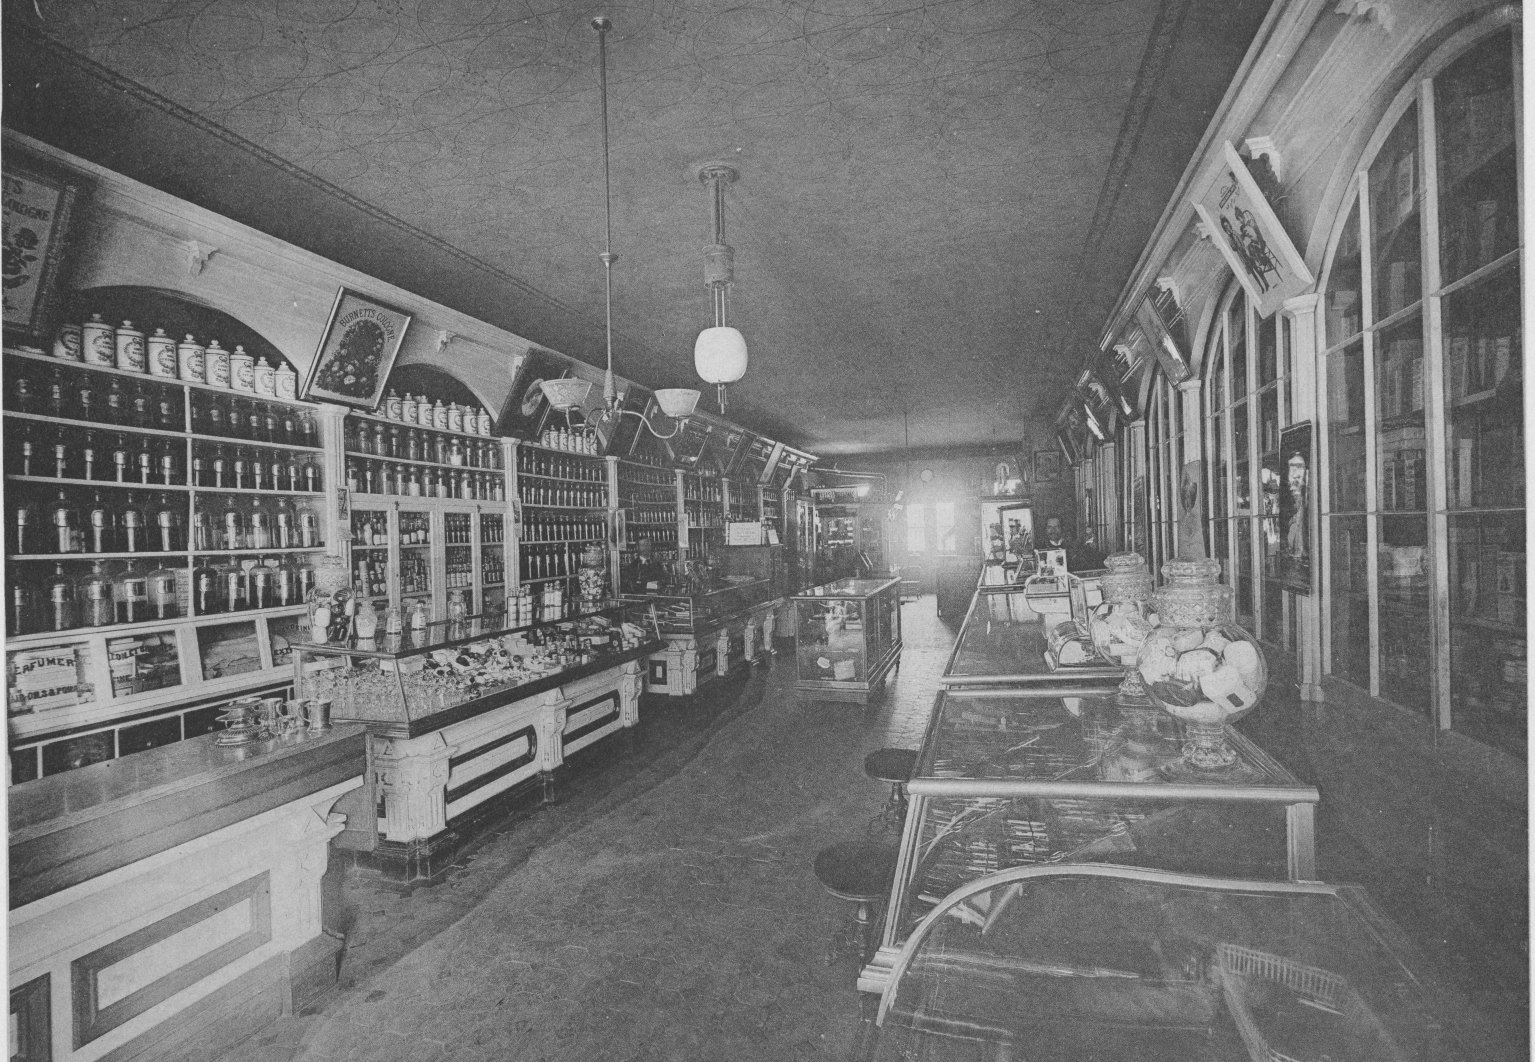 Lescher Drug Store Interior -1890s - Galesburg, IL